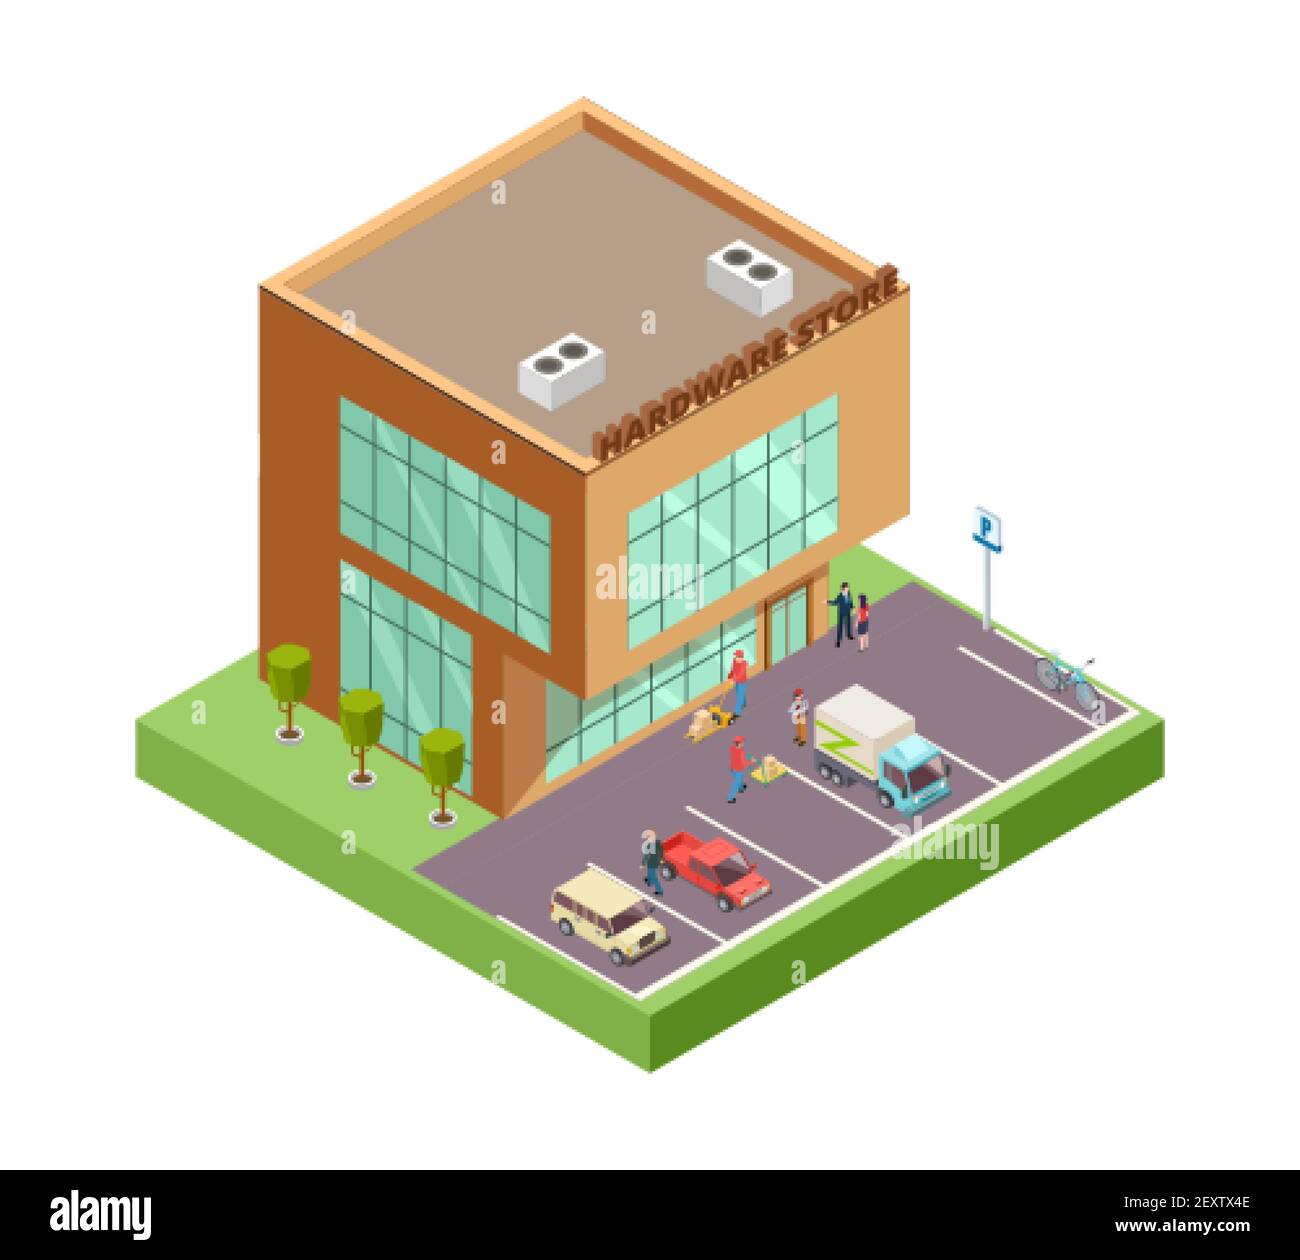 Isometrischer Baumarkt. Lage mit 3D Gebäude Leute Parken Autos. Vektorgrafik für den Hardwareladen. Gebäude Hardware-Shop und Shop, Baureparatur außen Stock Vektor